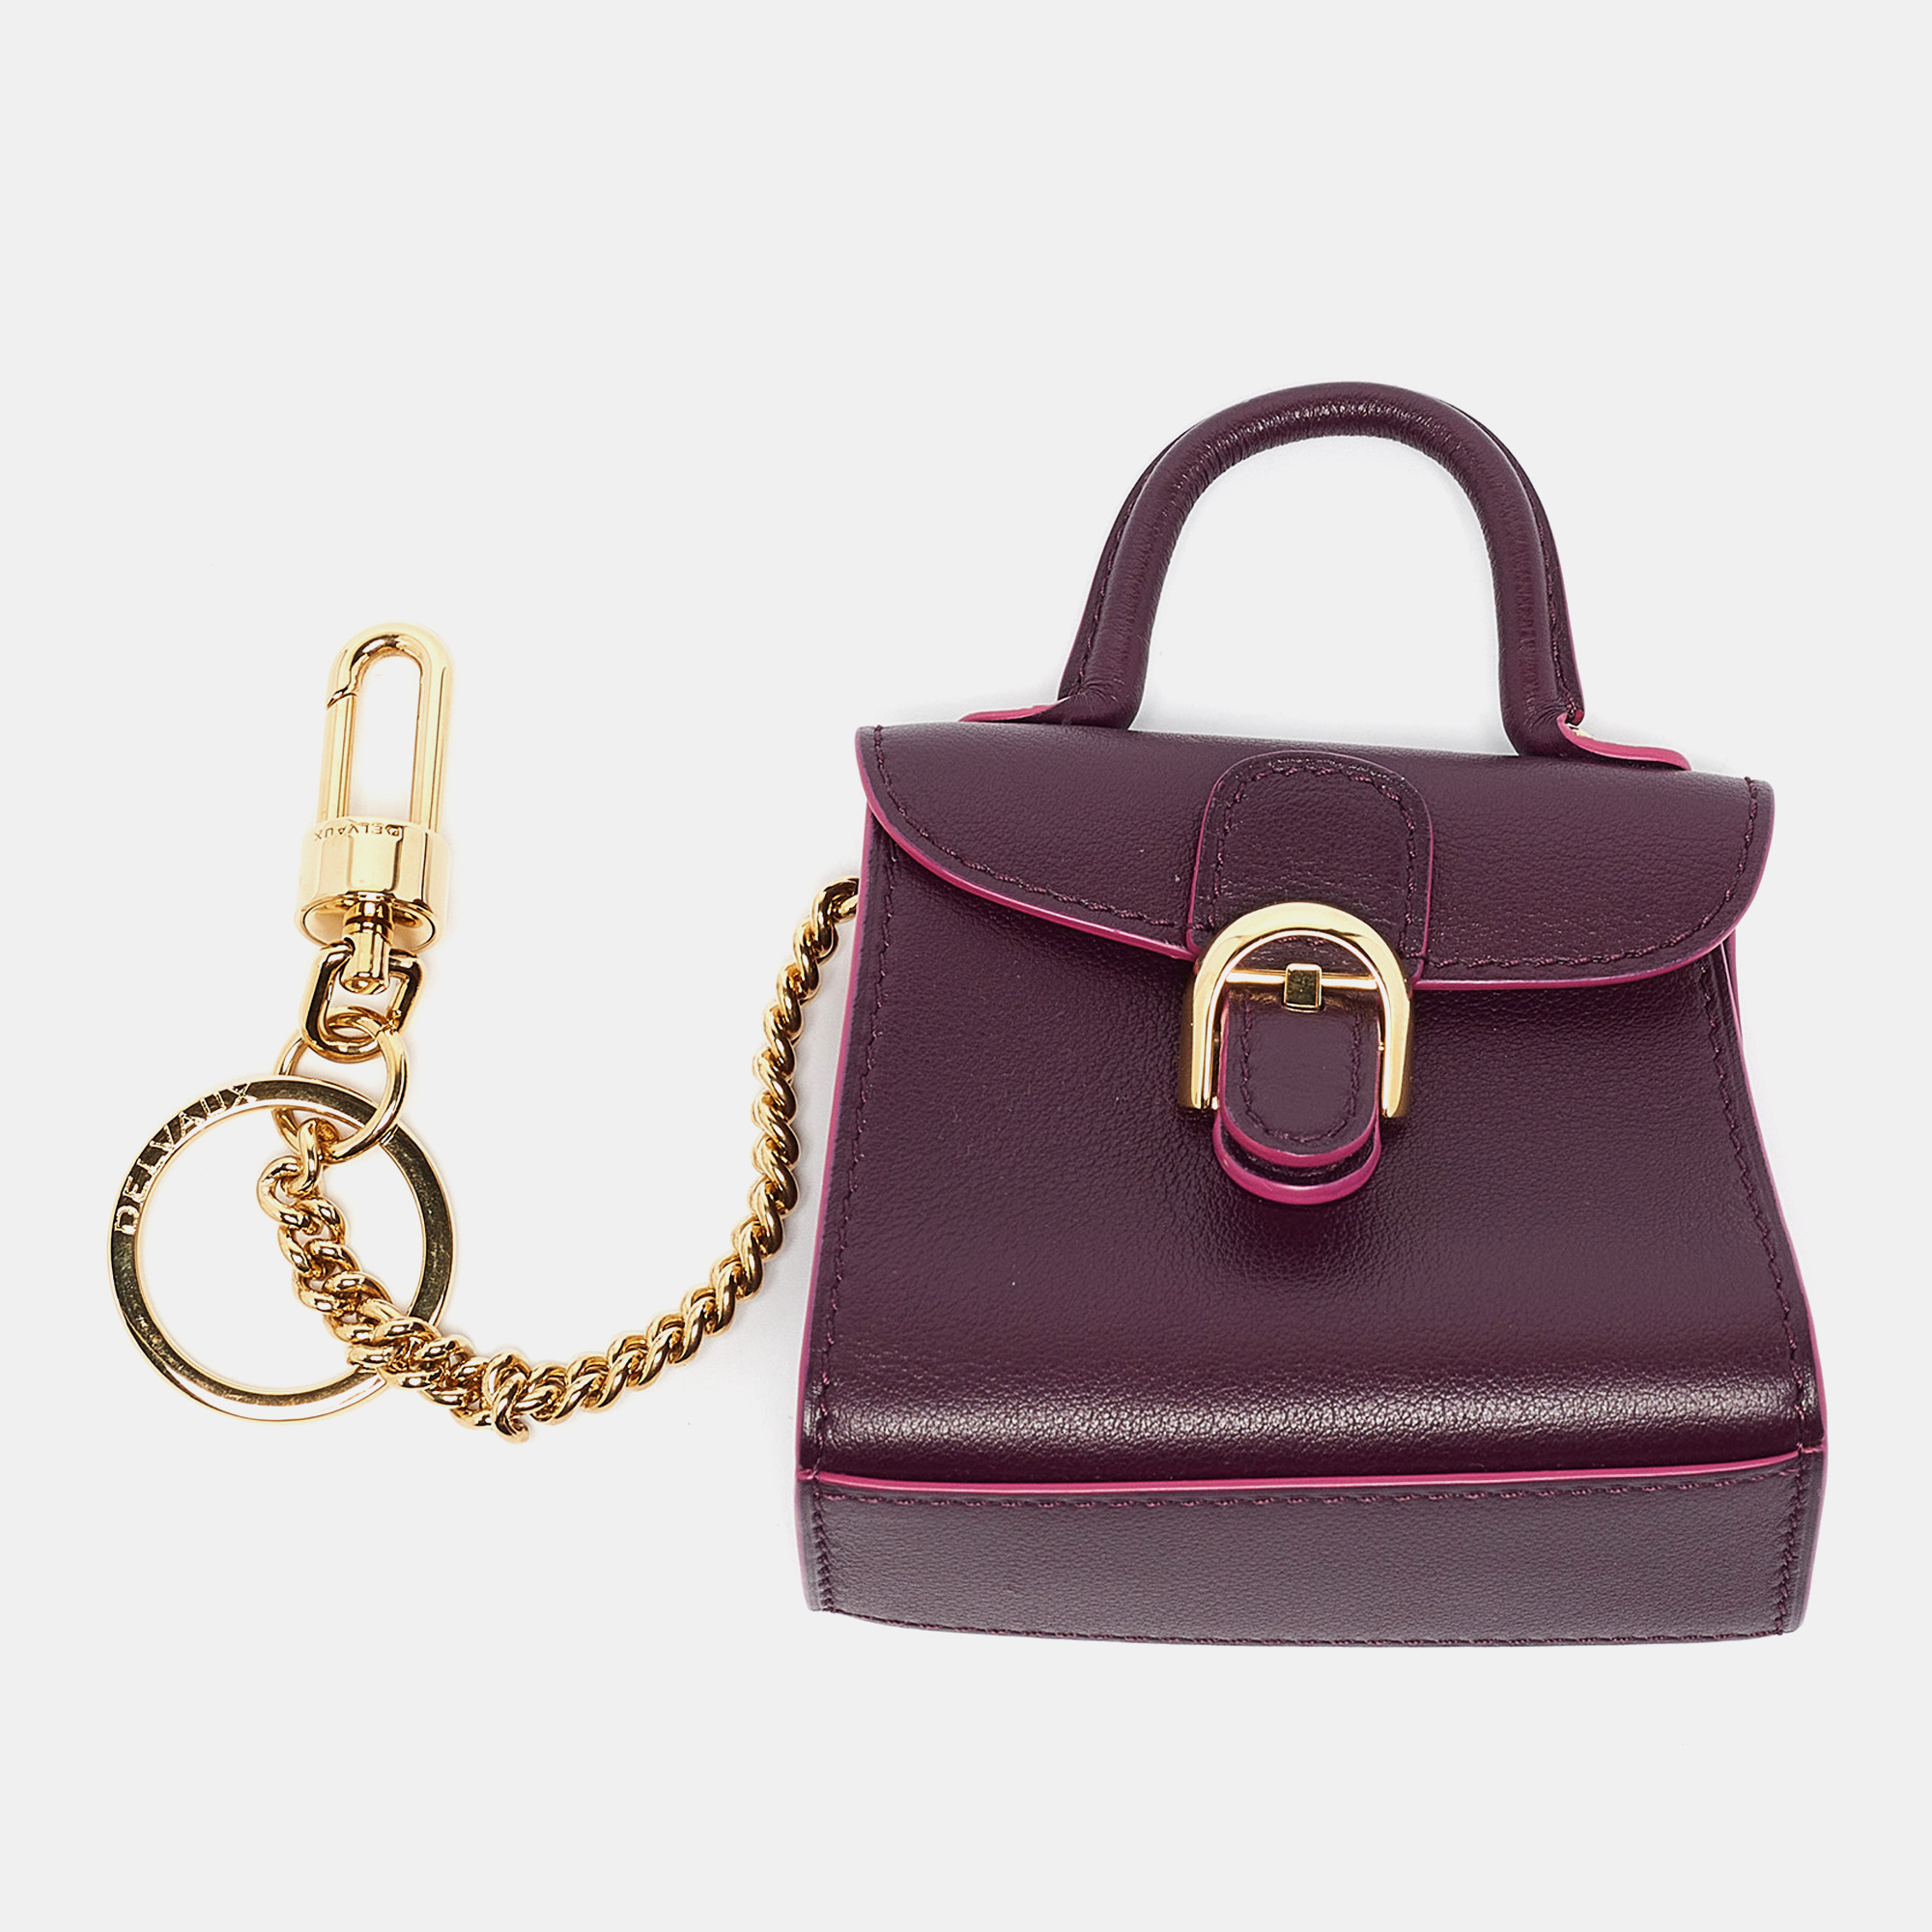 Delvaux purple leather brillant bag charm